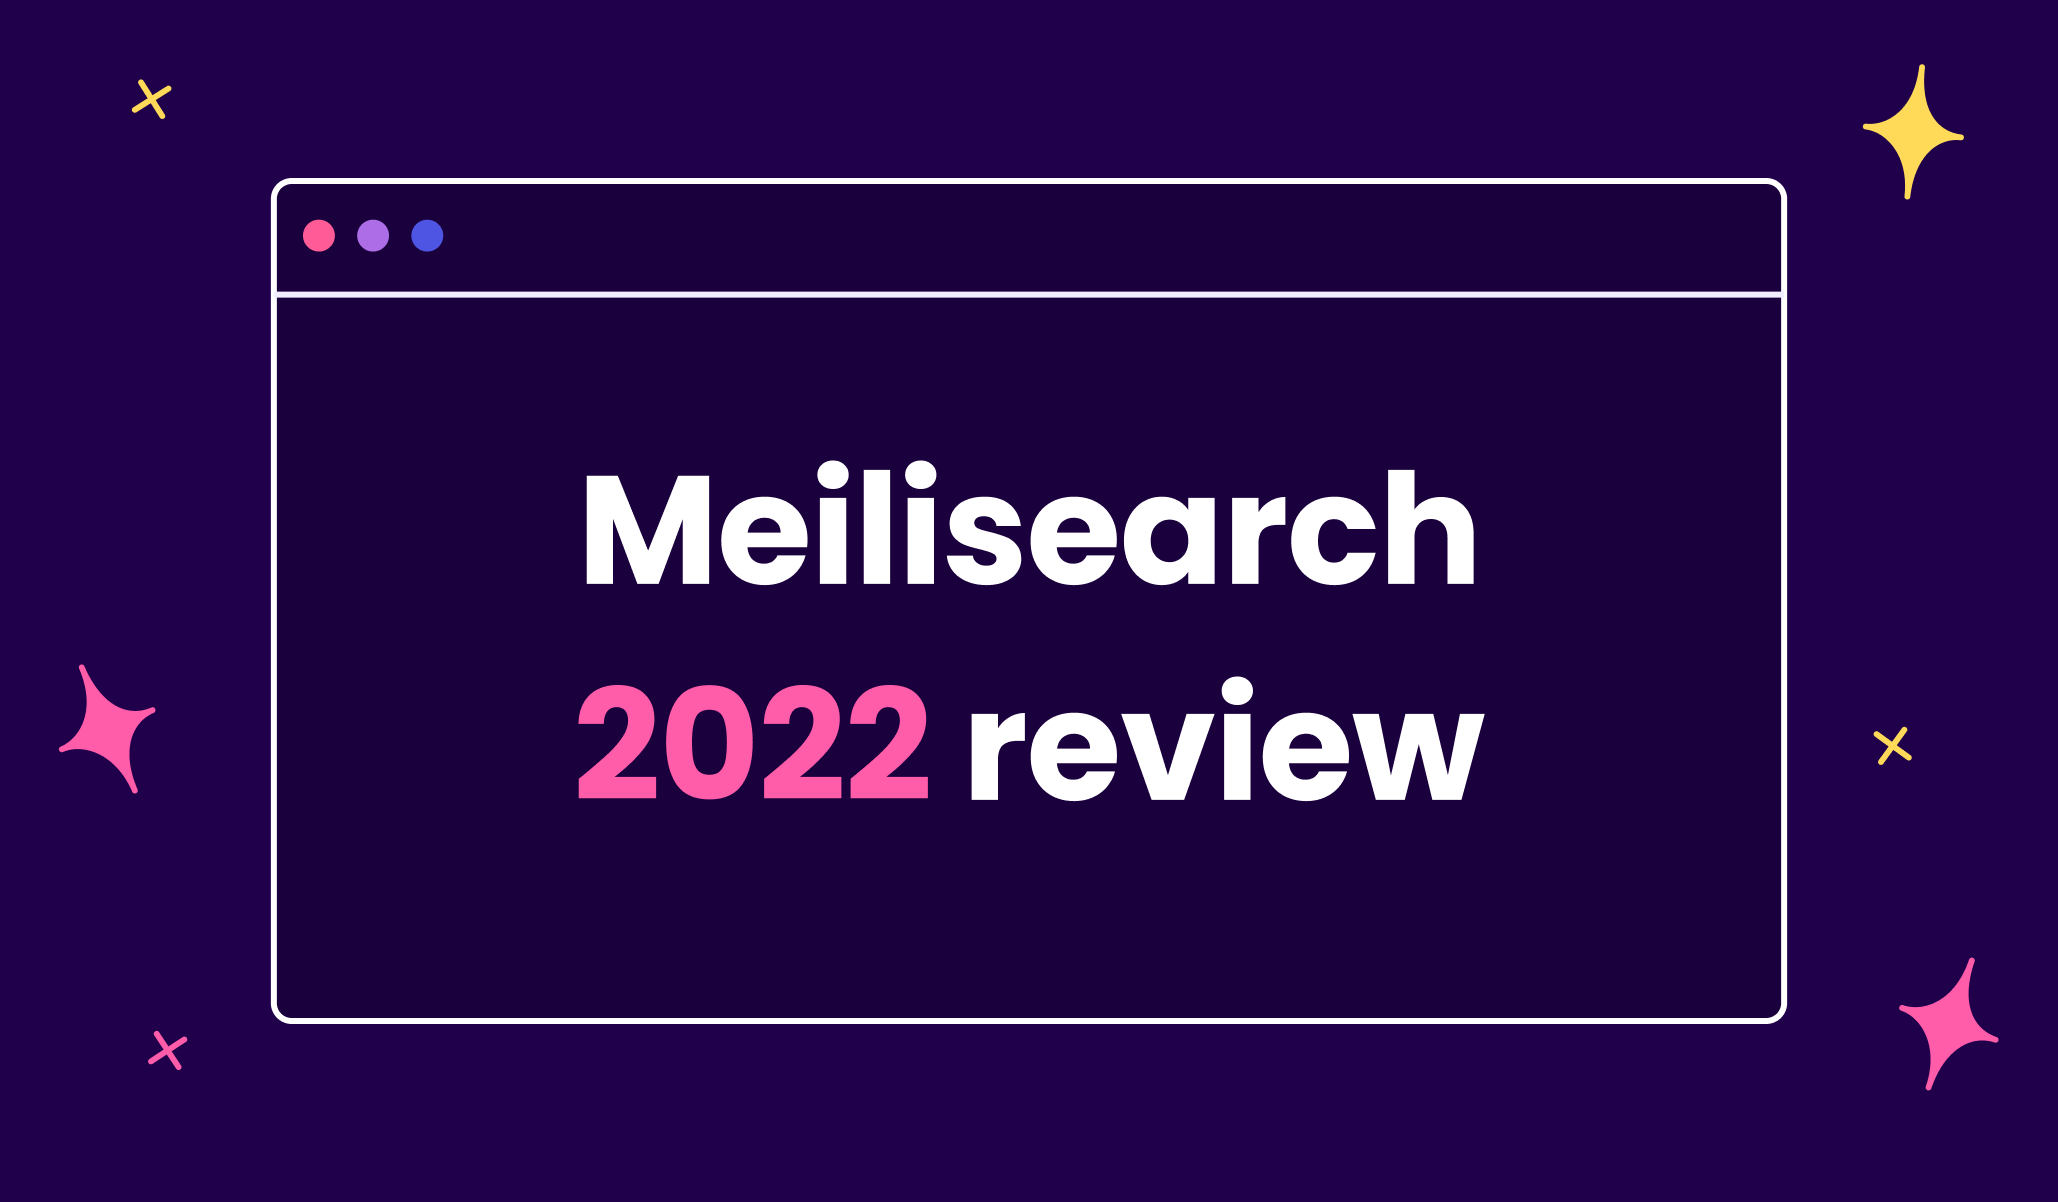 Meilisearch in 2022